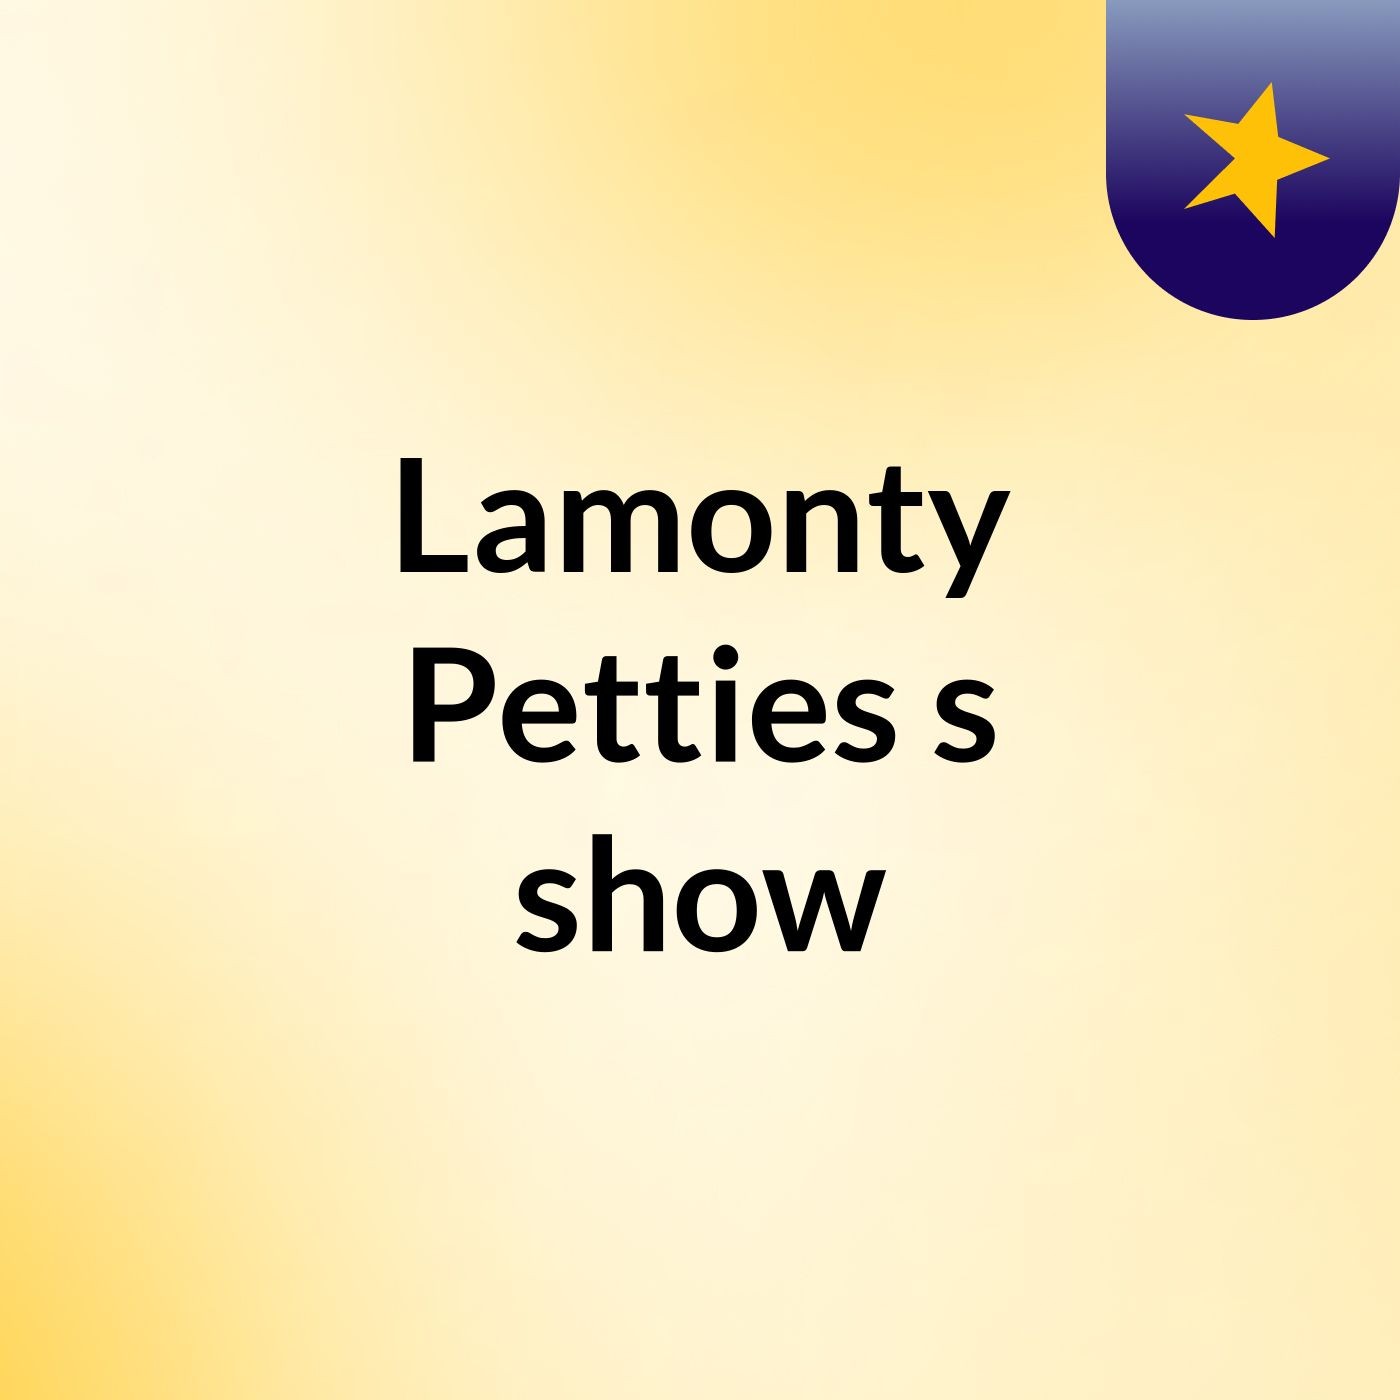 Lamonty Petties's show